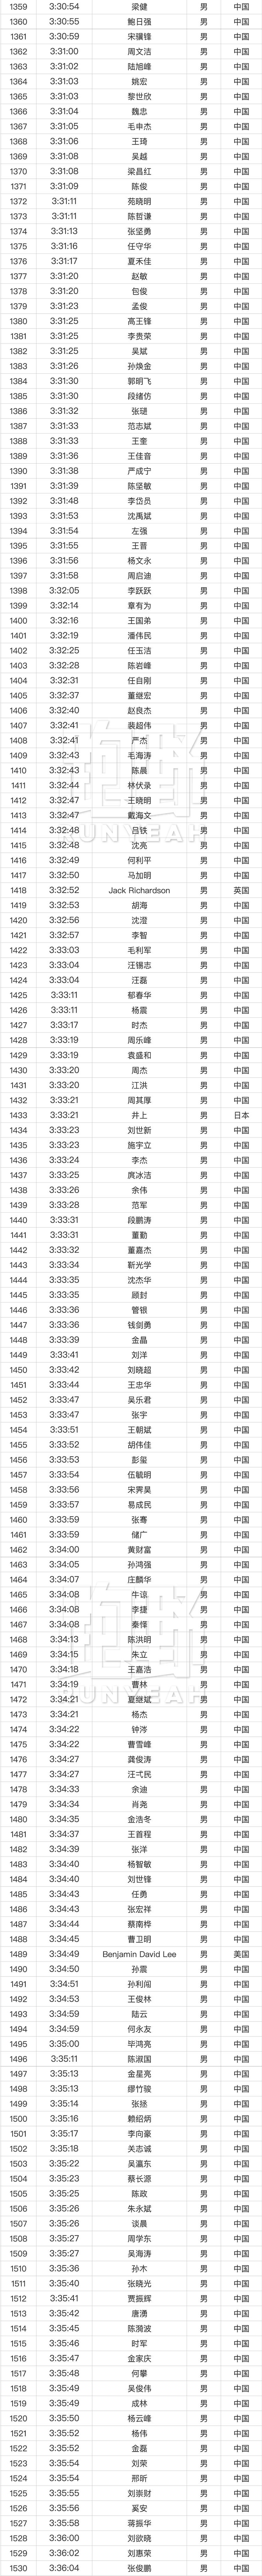 英雄榜｜2022 上海马拉松破4名单